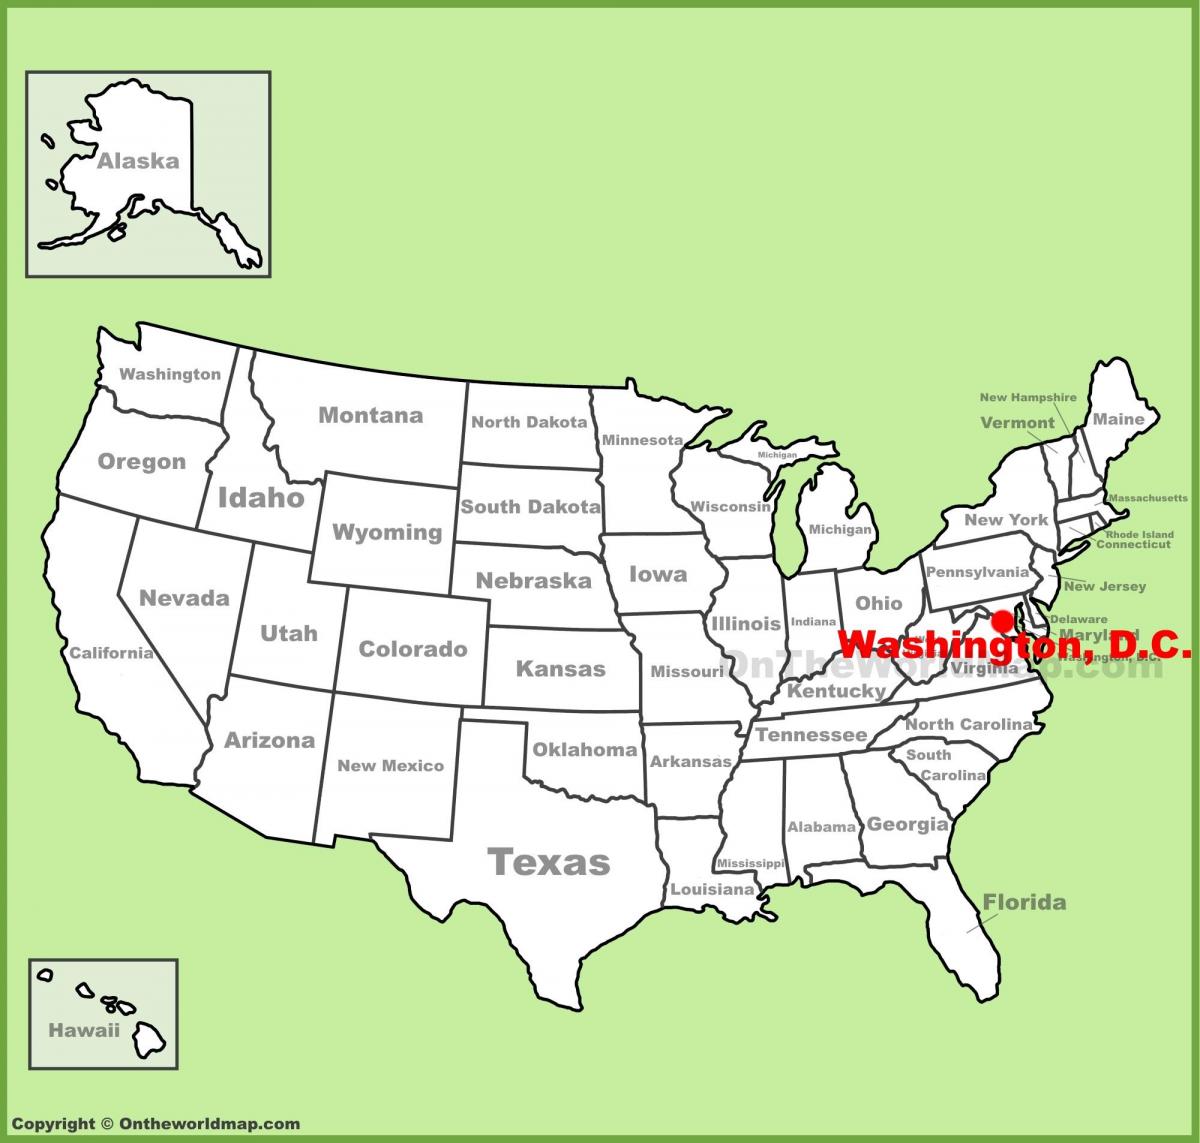 Вашингтон, дц на мапи САД